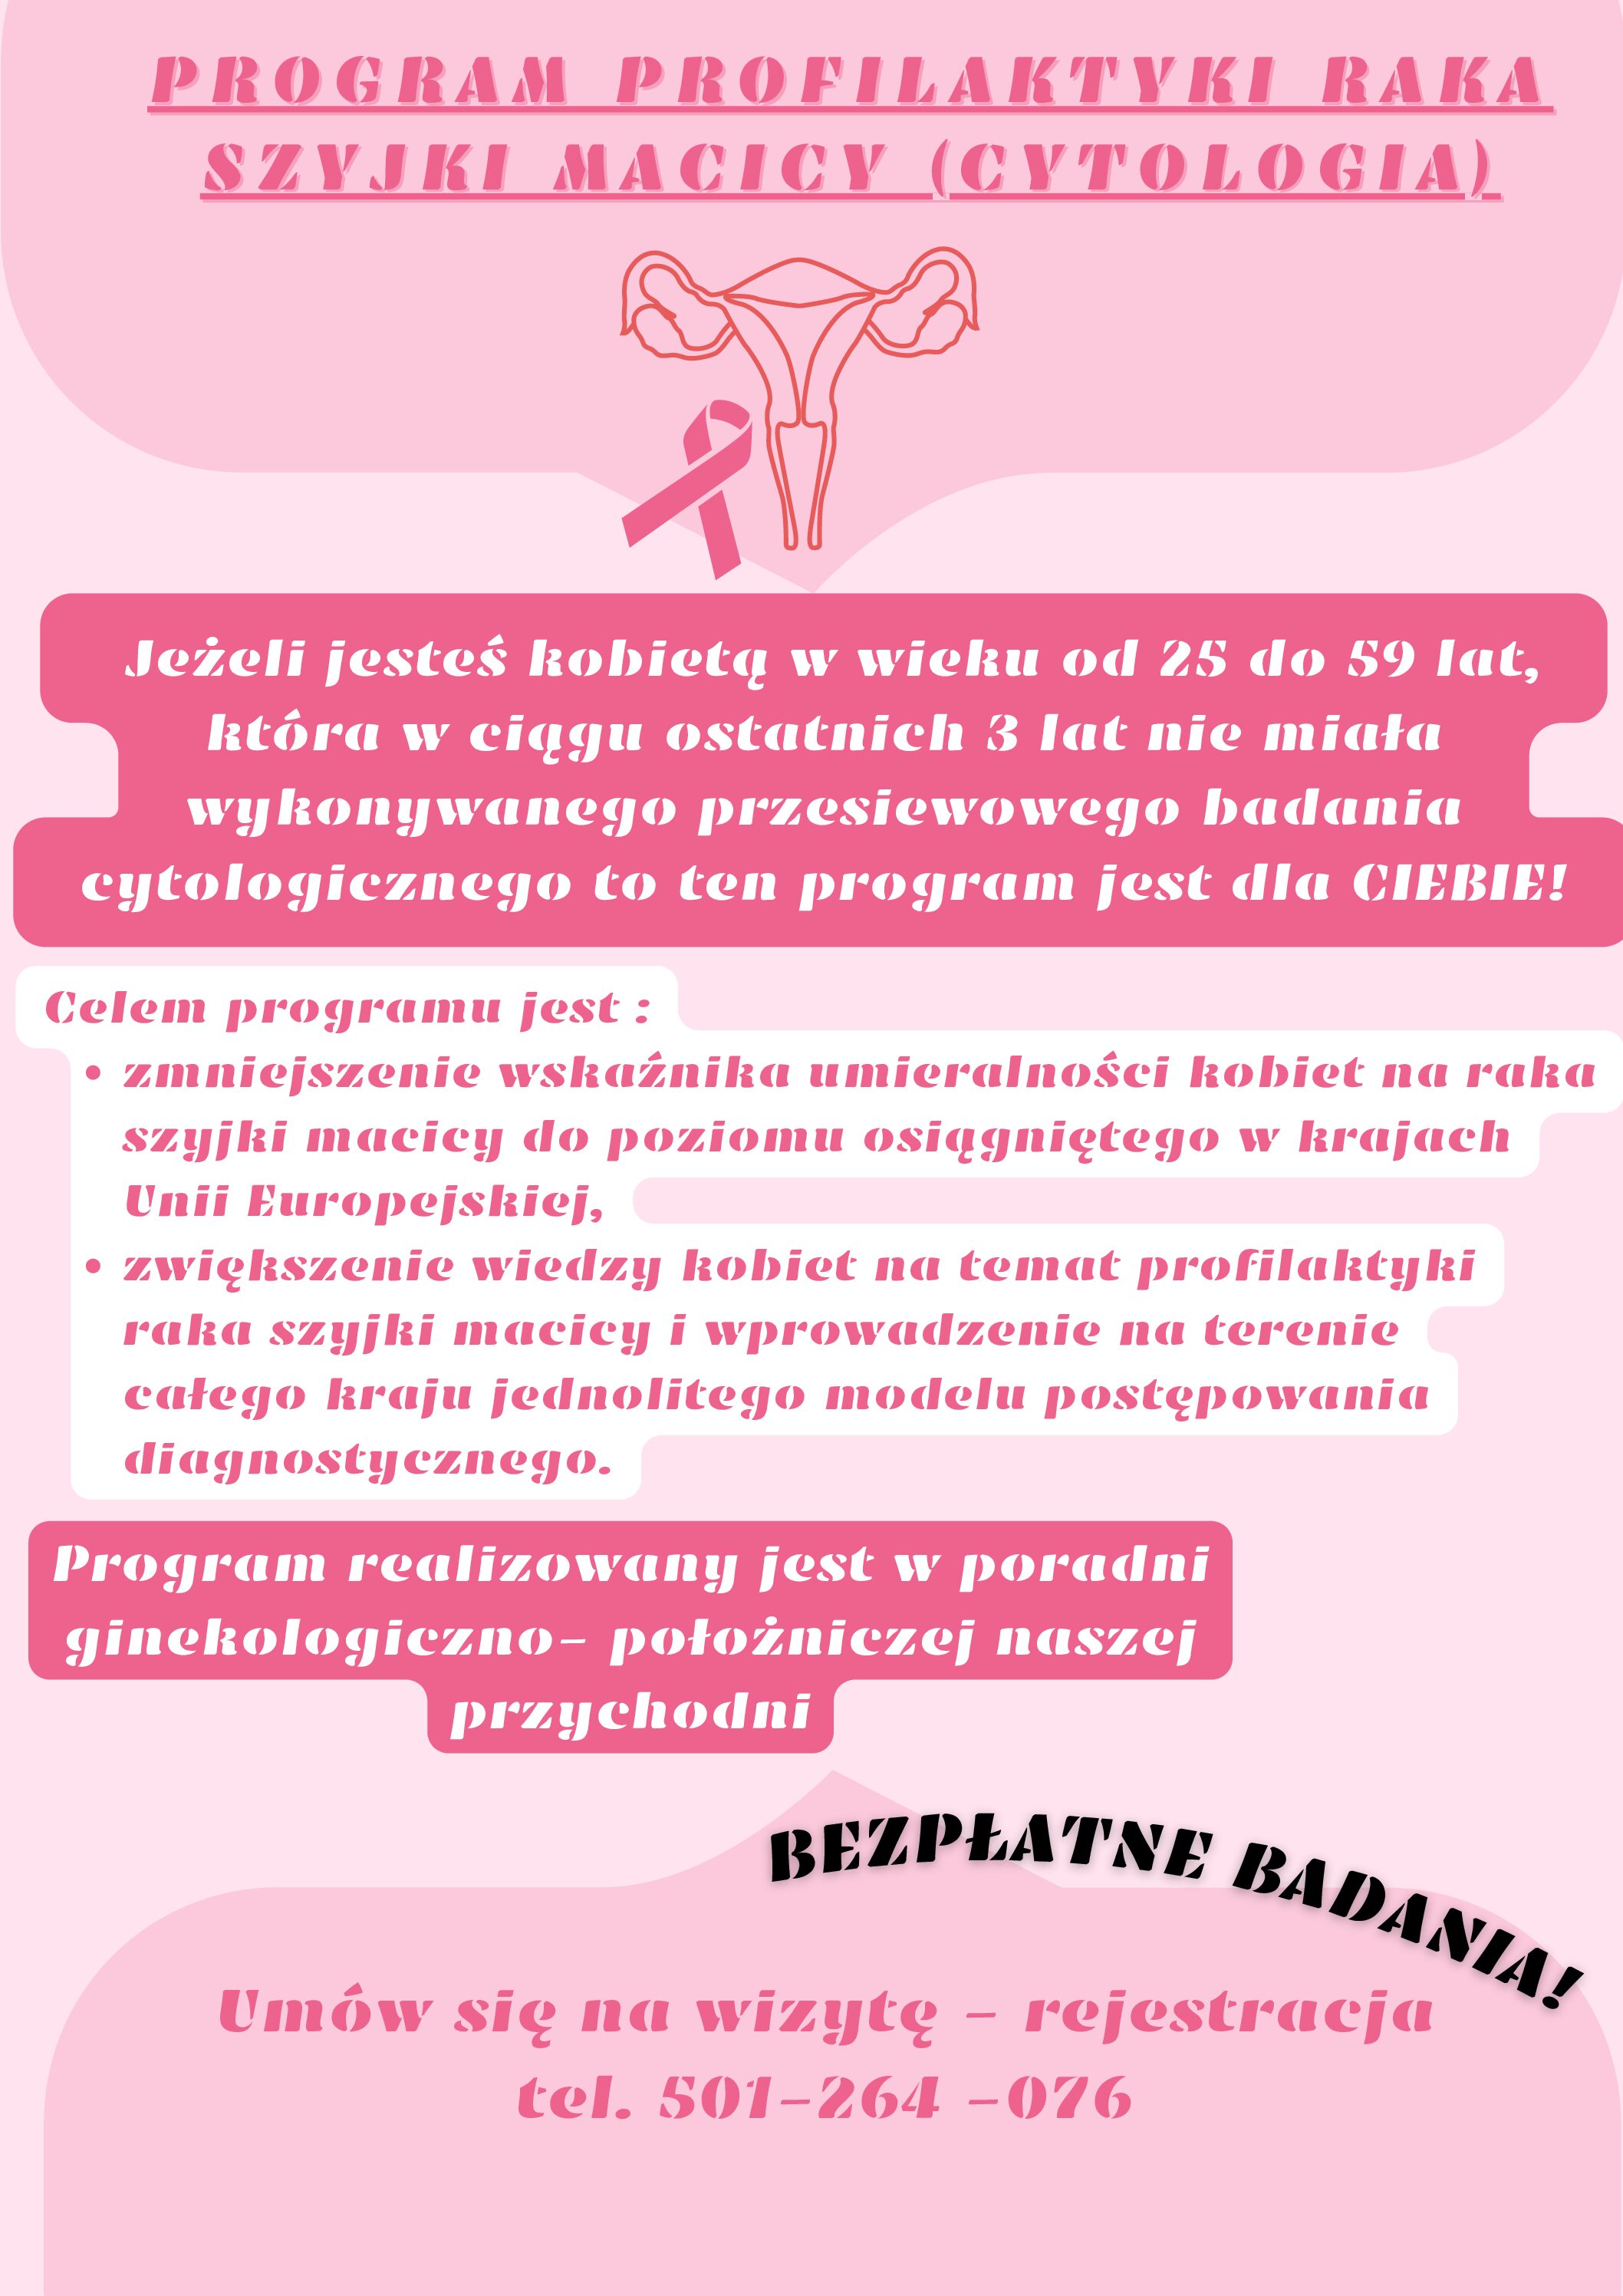 Program profilaktyki raka szyjki macicy